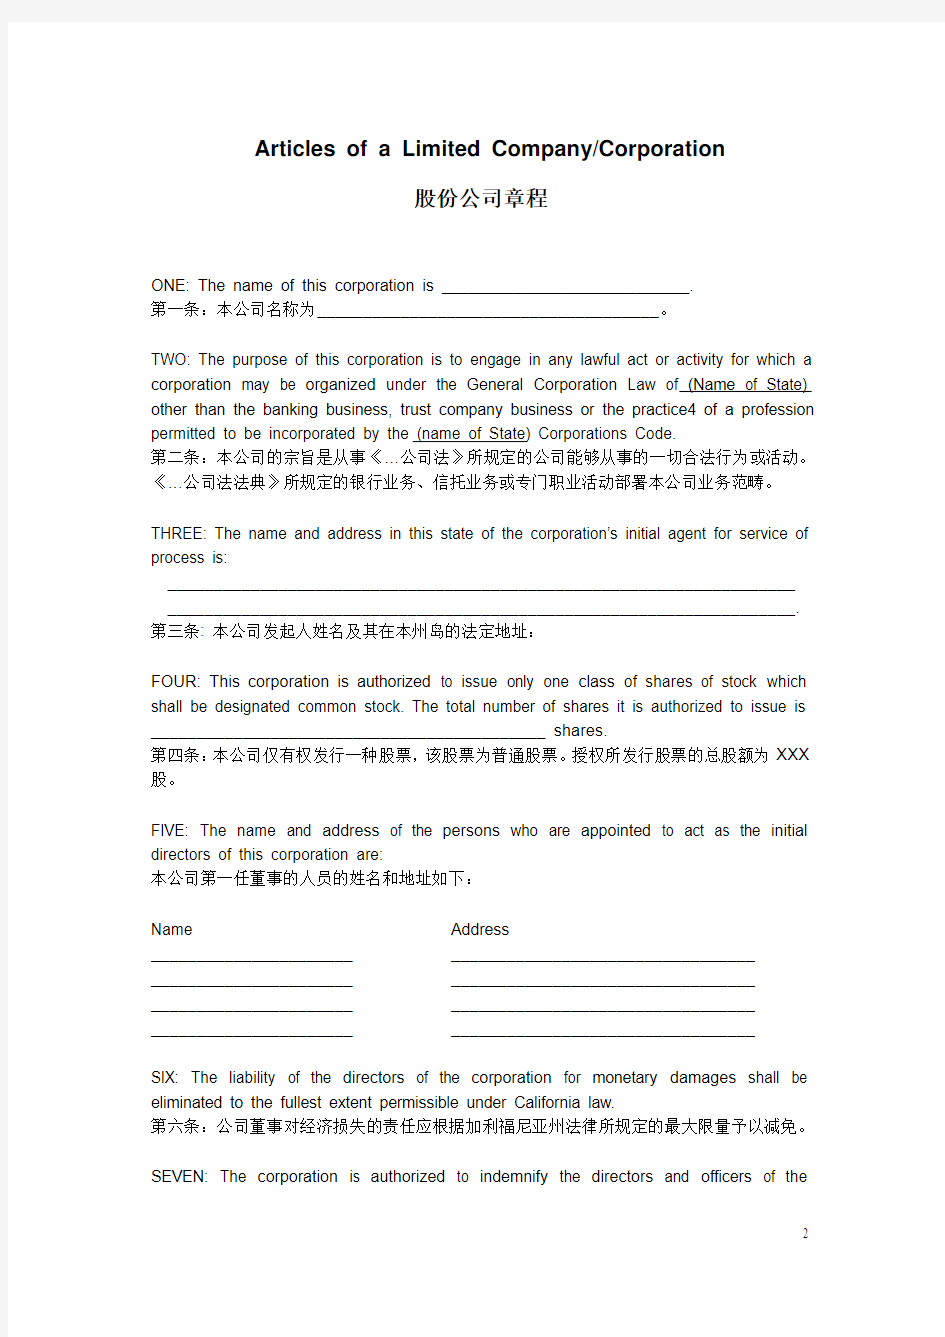 国外公司注册文件(英汉对照版)